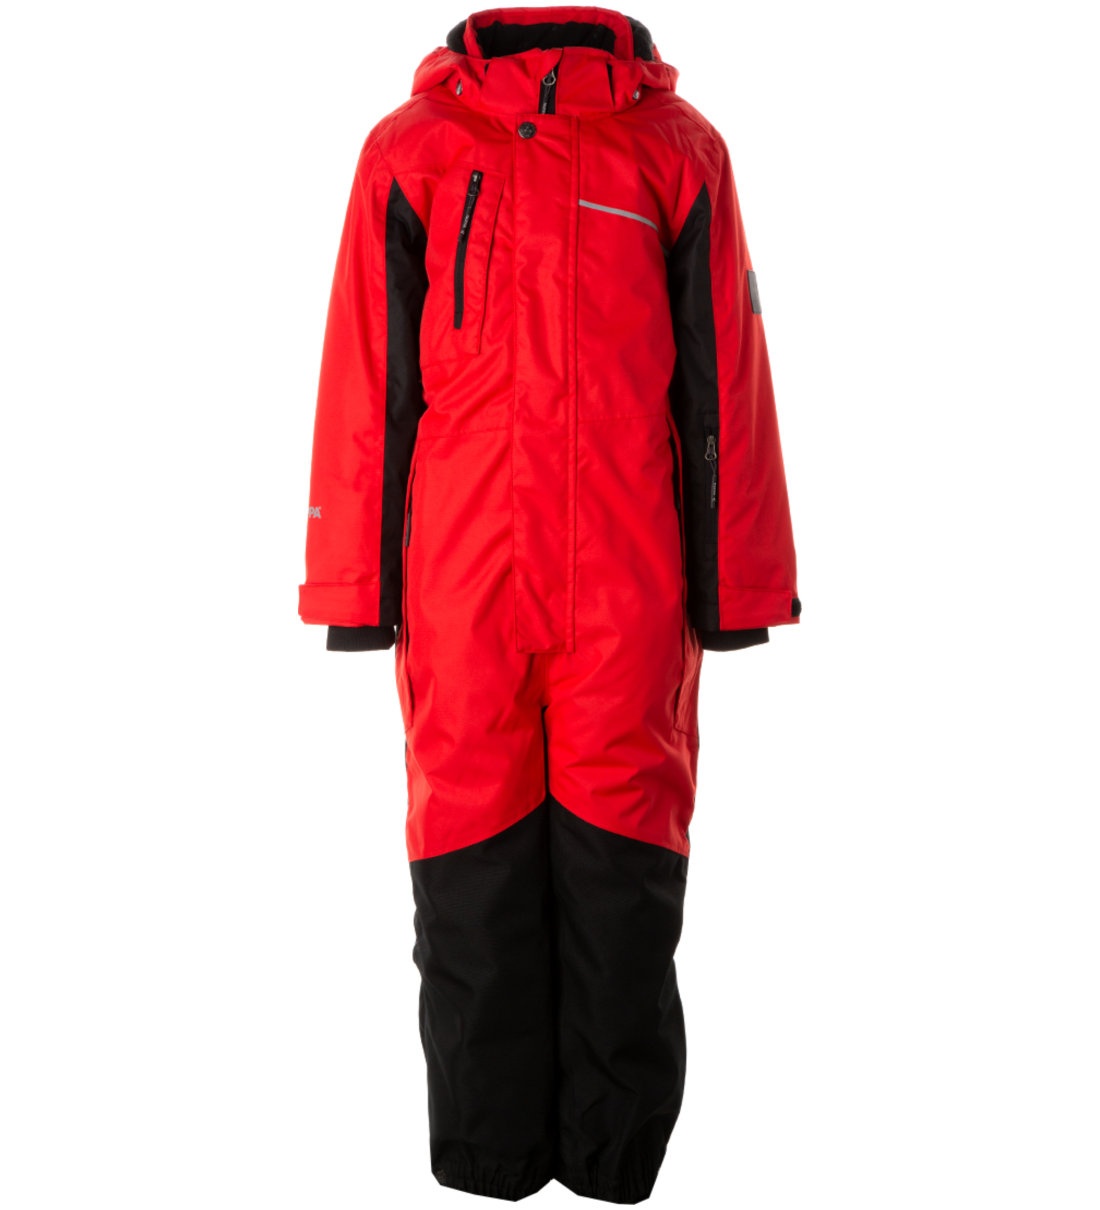 Комбинезон детский Huppa Mooley 3, красный, черный, 134 комплект верхней одежды детский huppa winter рисунок морская волна 140